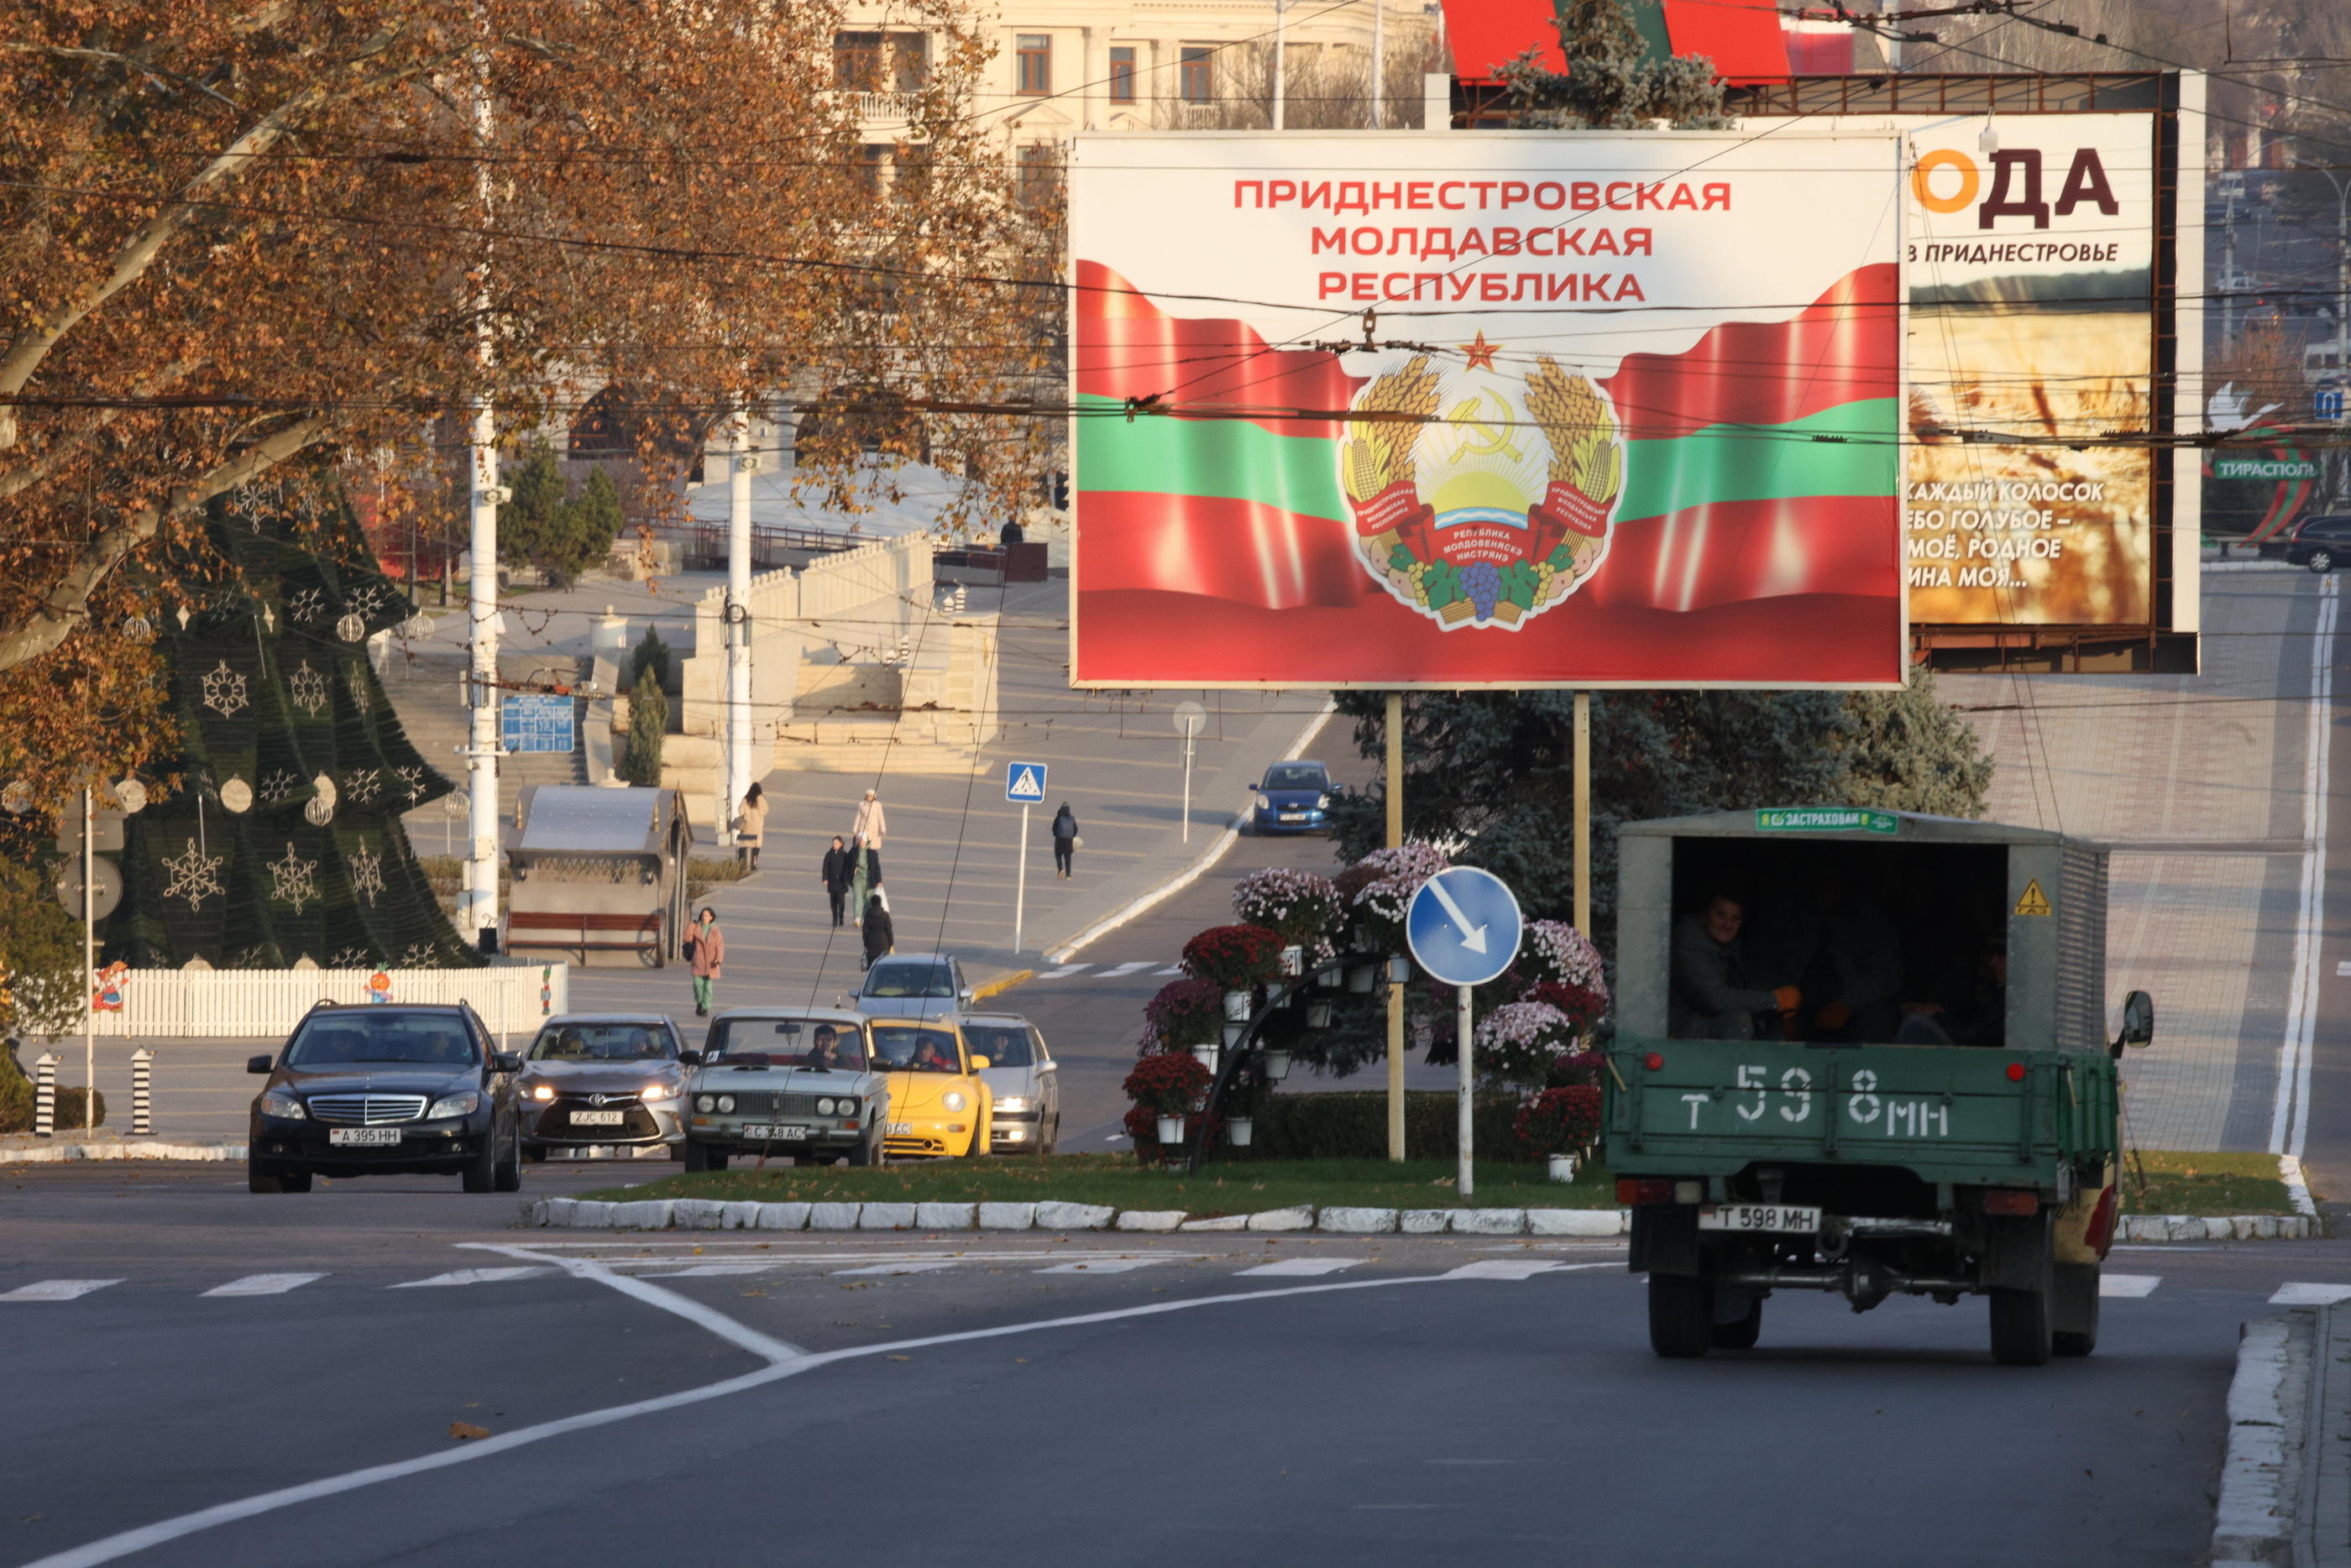 De Tiraspol, les autorités de Transnistrie, une région séparatiste prorusse de Moldavie, affirment qu'in drone kamikaze a ciblé un de leur base militaire. (Illustration.) LP/Olivier ARANDEL.